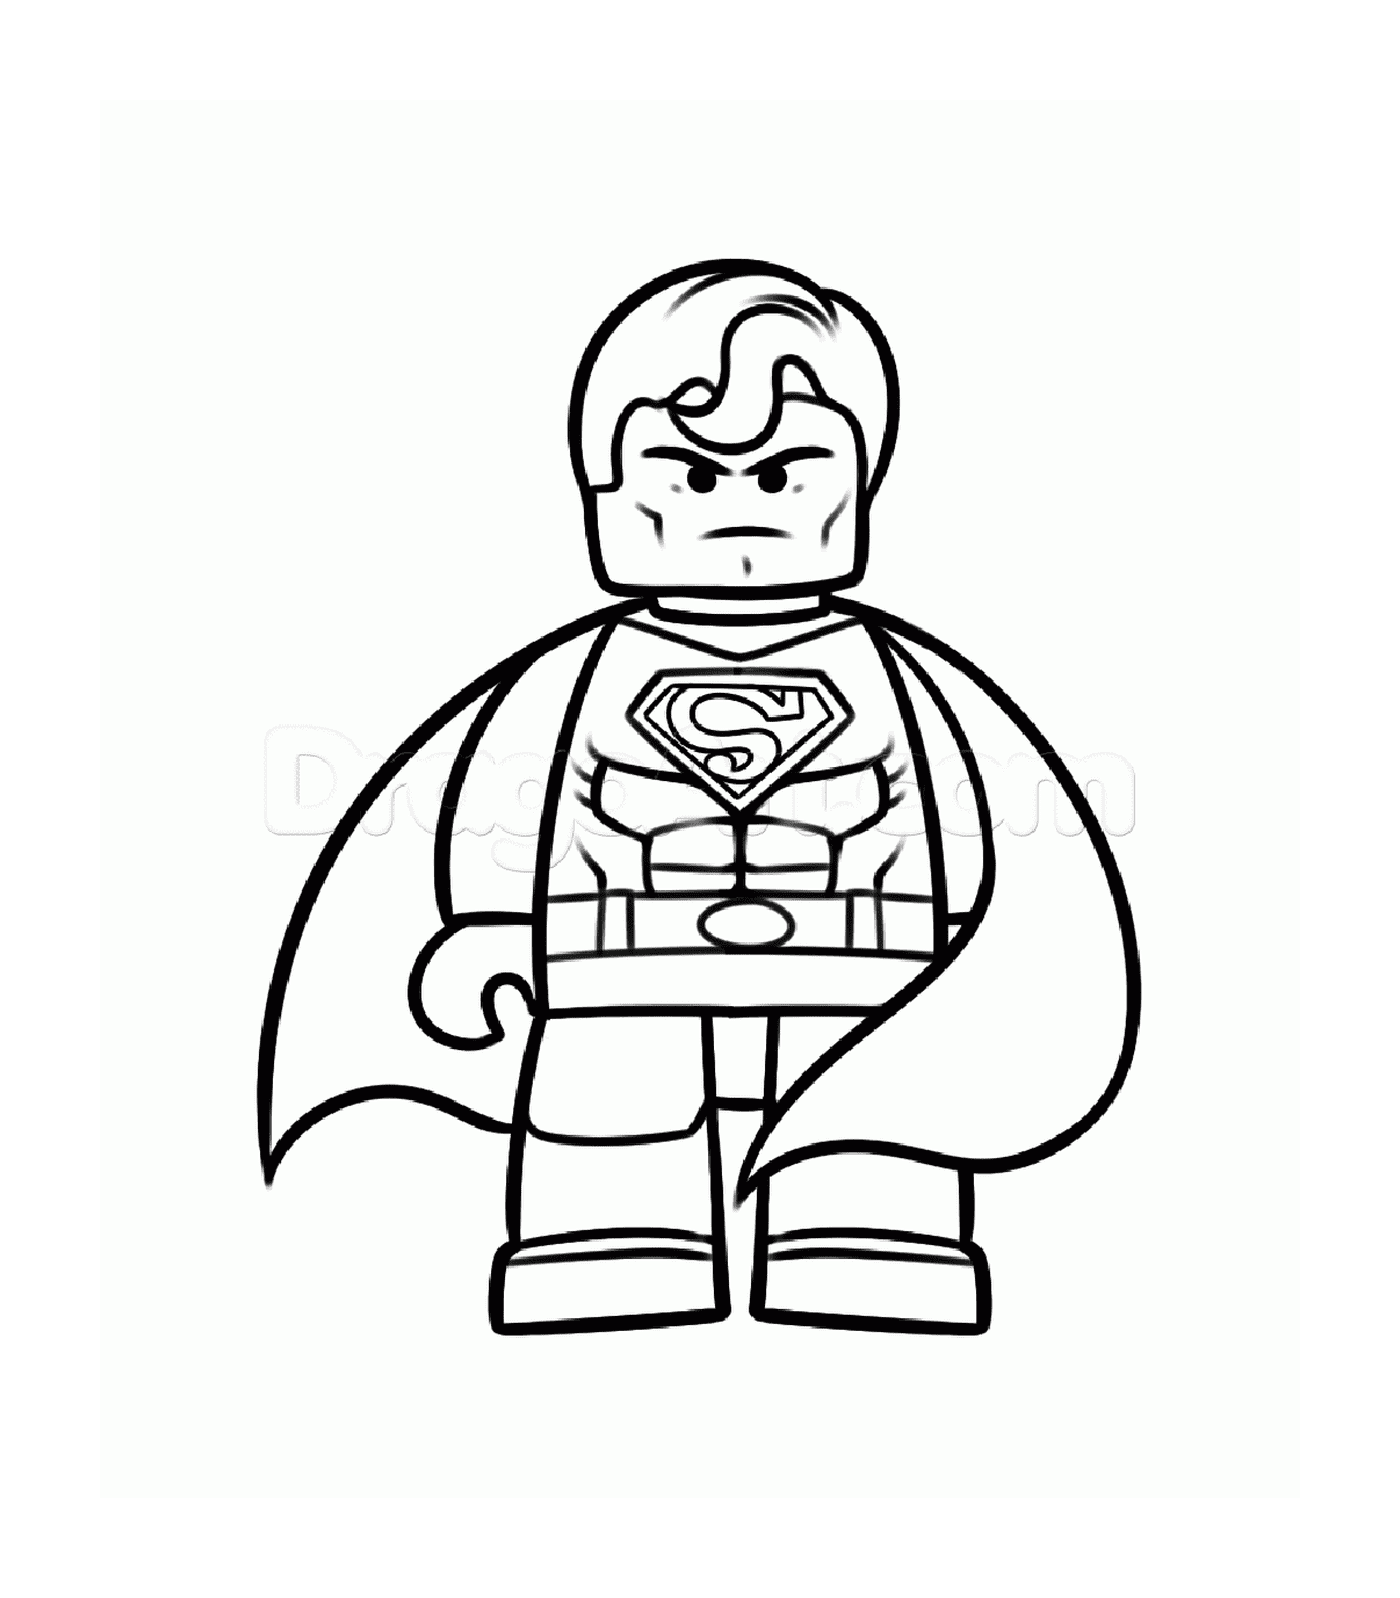  Super-Homem zangado com Batman Lego 